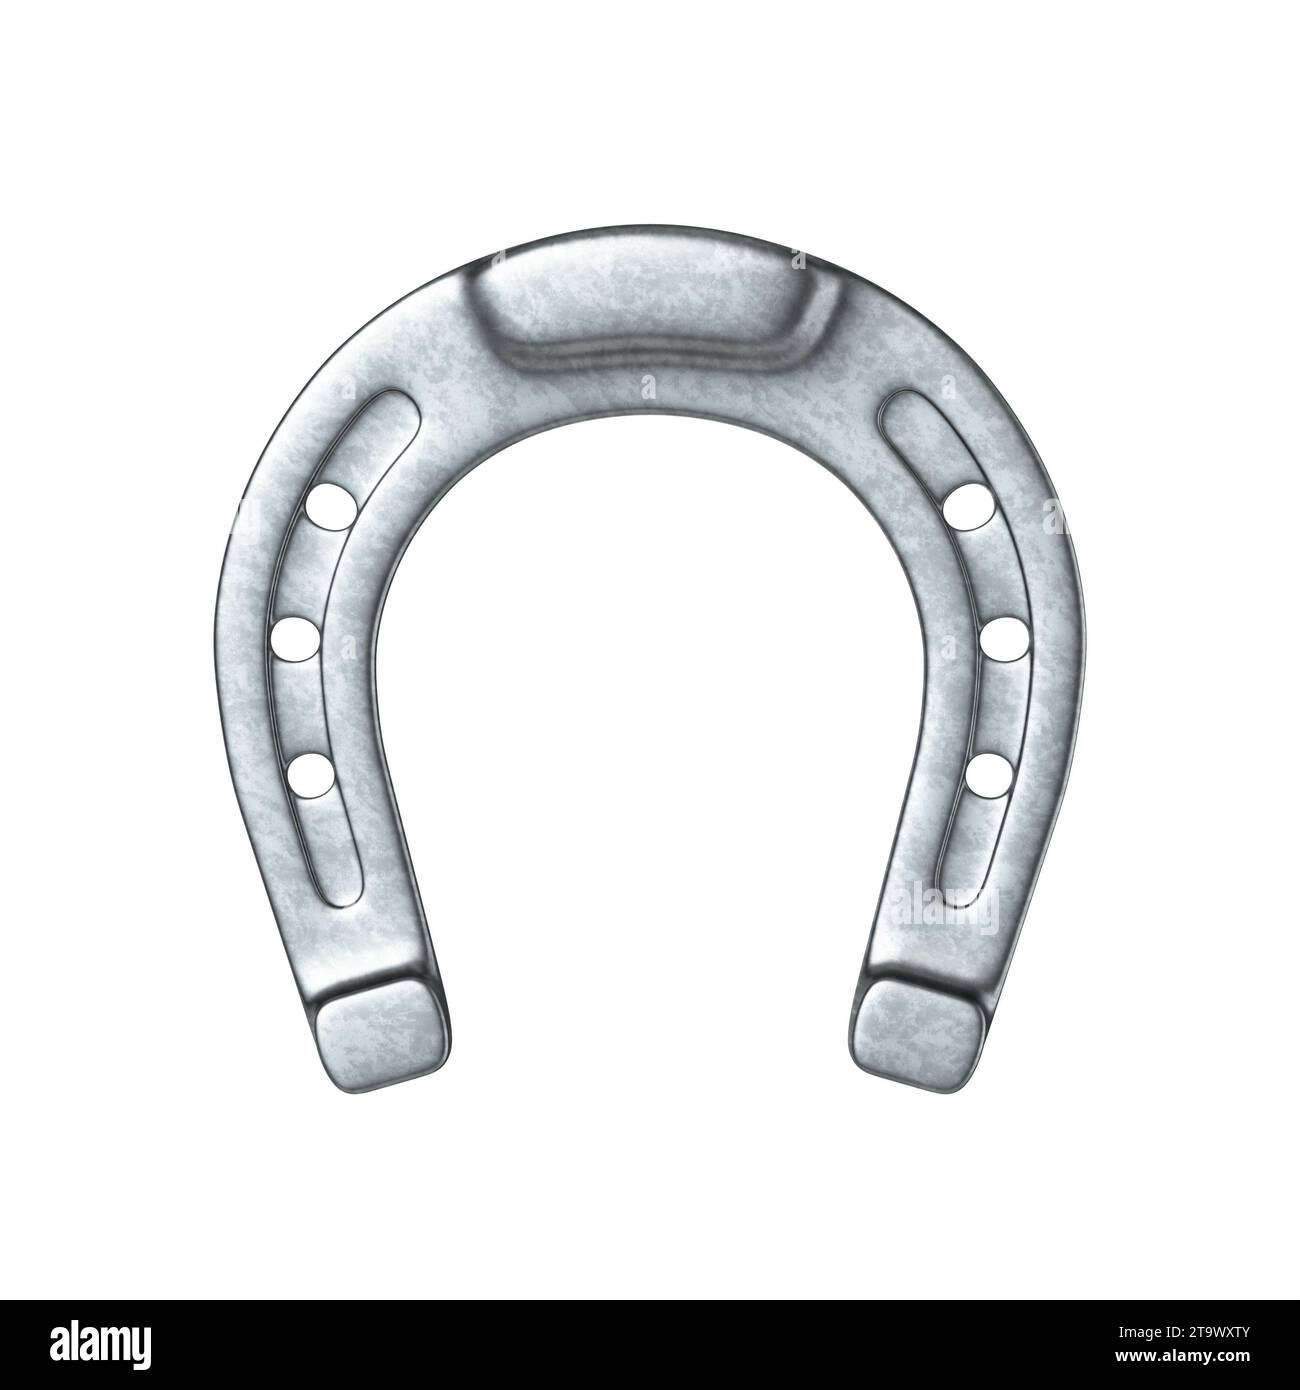 Illustration de rendu 3D de fers à cheval en métal isolé sur fond blanc Banque D'Images